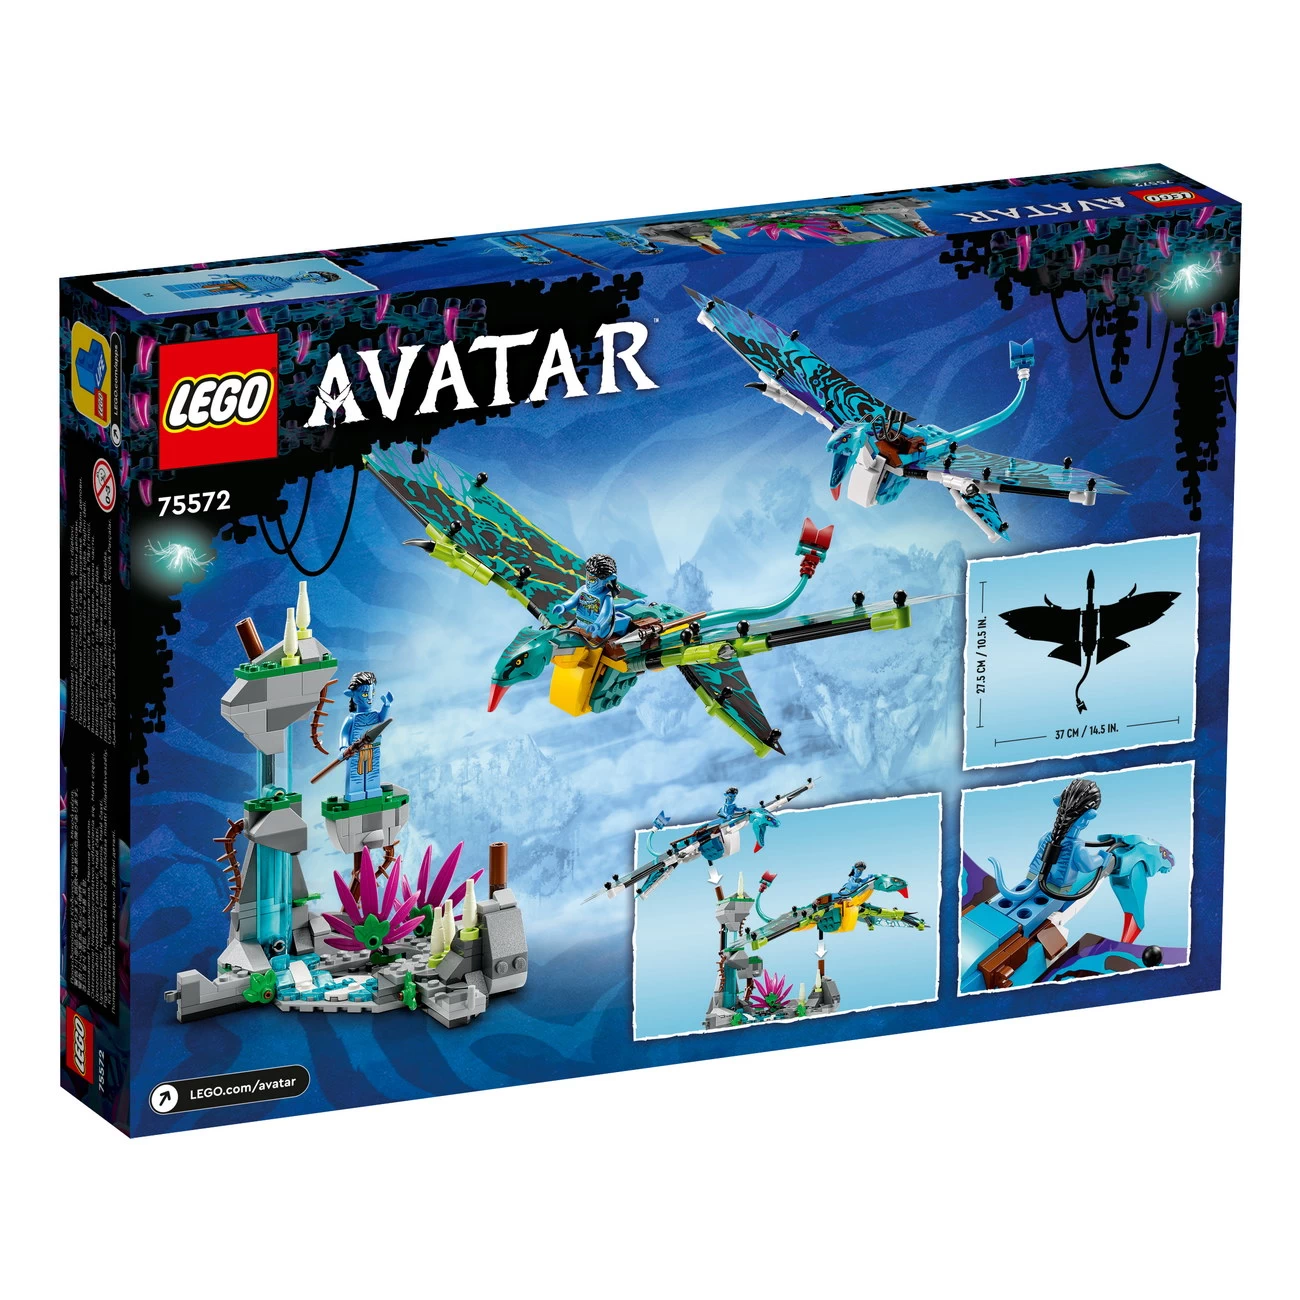 LEGO Avatar 75572 - Jakes und Neytiris erster Flug auf einem Banshee